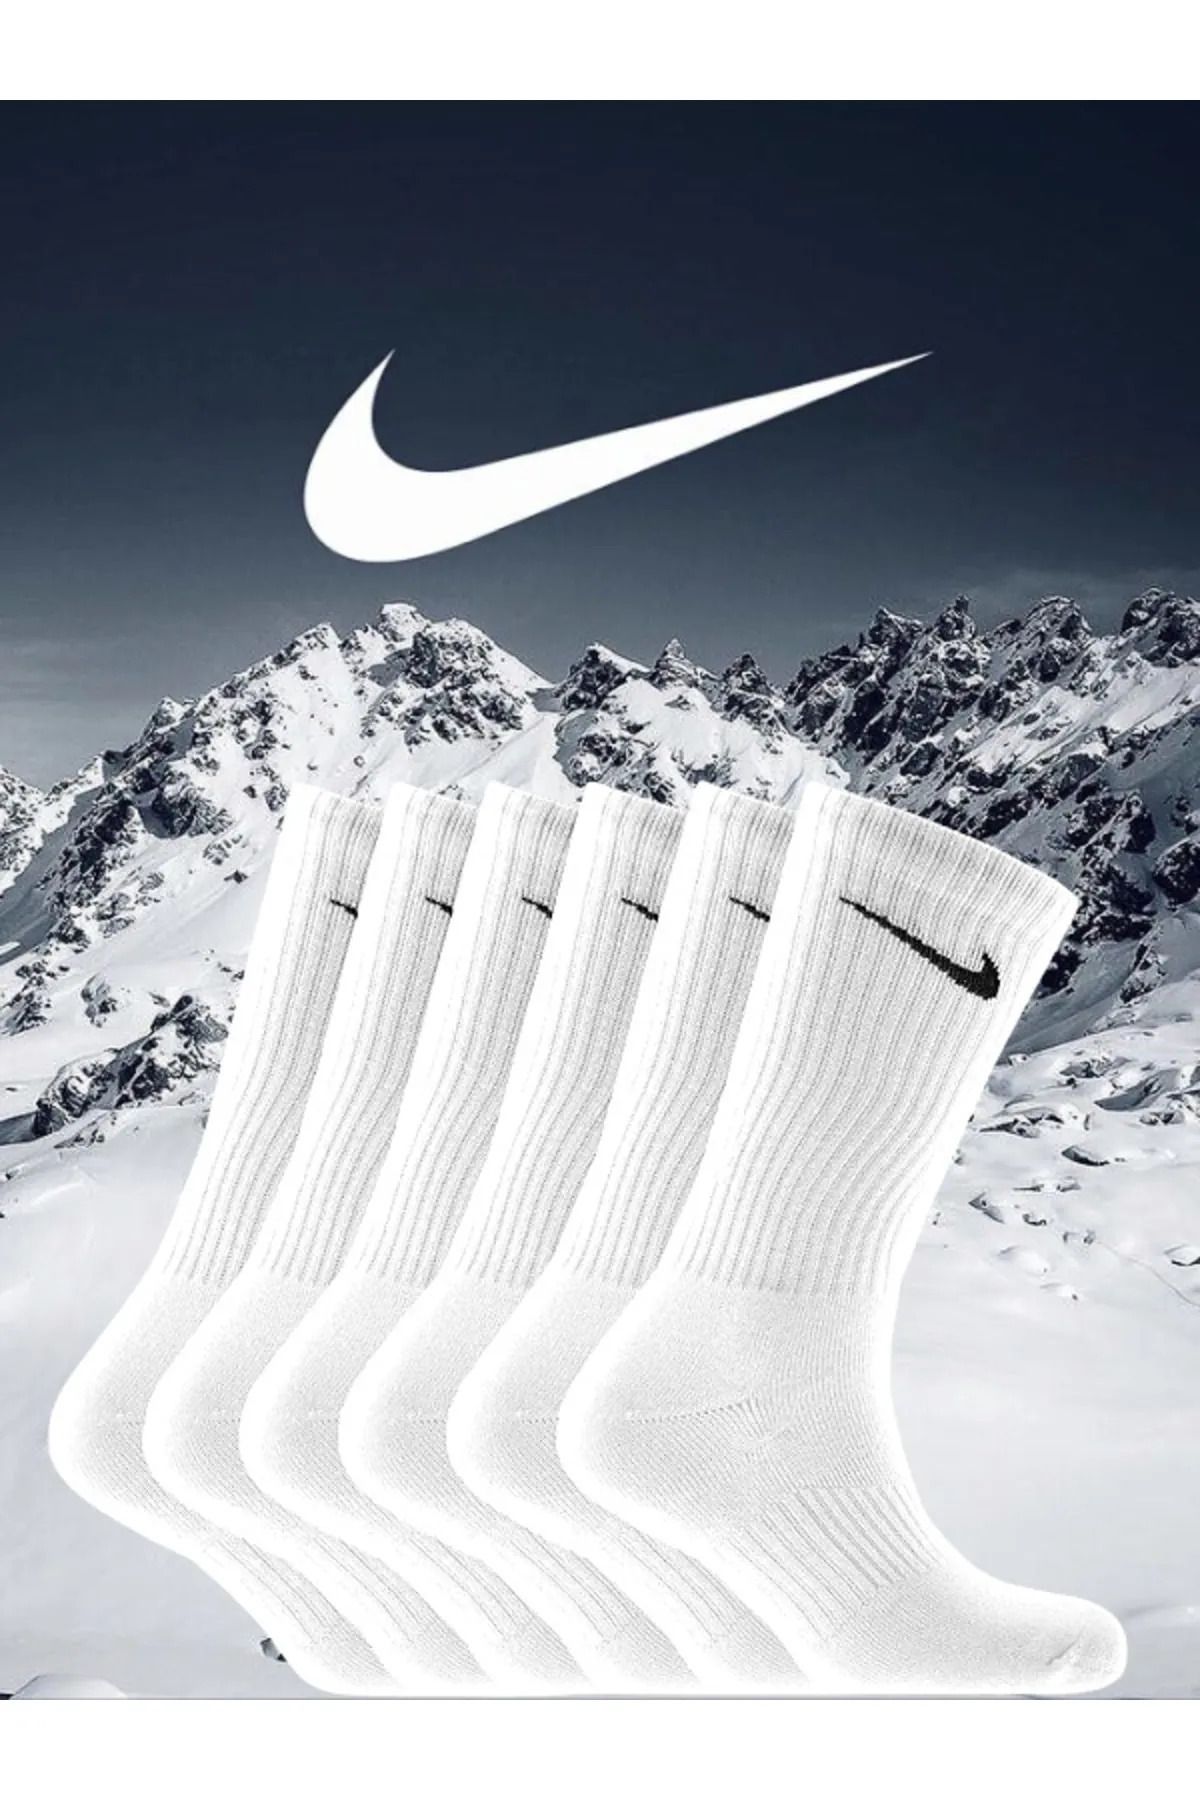 Socks Sirius 6 Çift Fitilli Penye Kumaş Antrenman Spor Beyaz Futbol Maç Halı Saha Koşu Çorap Seti